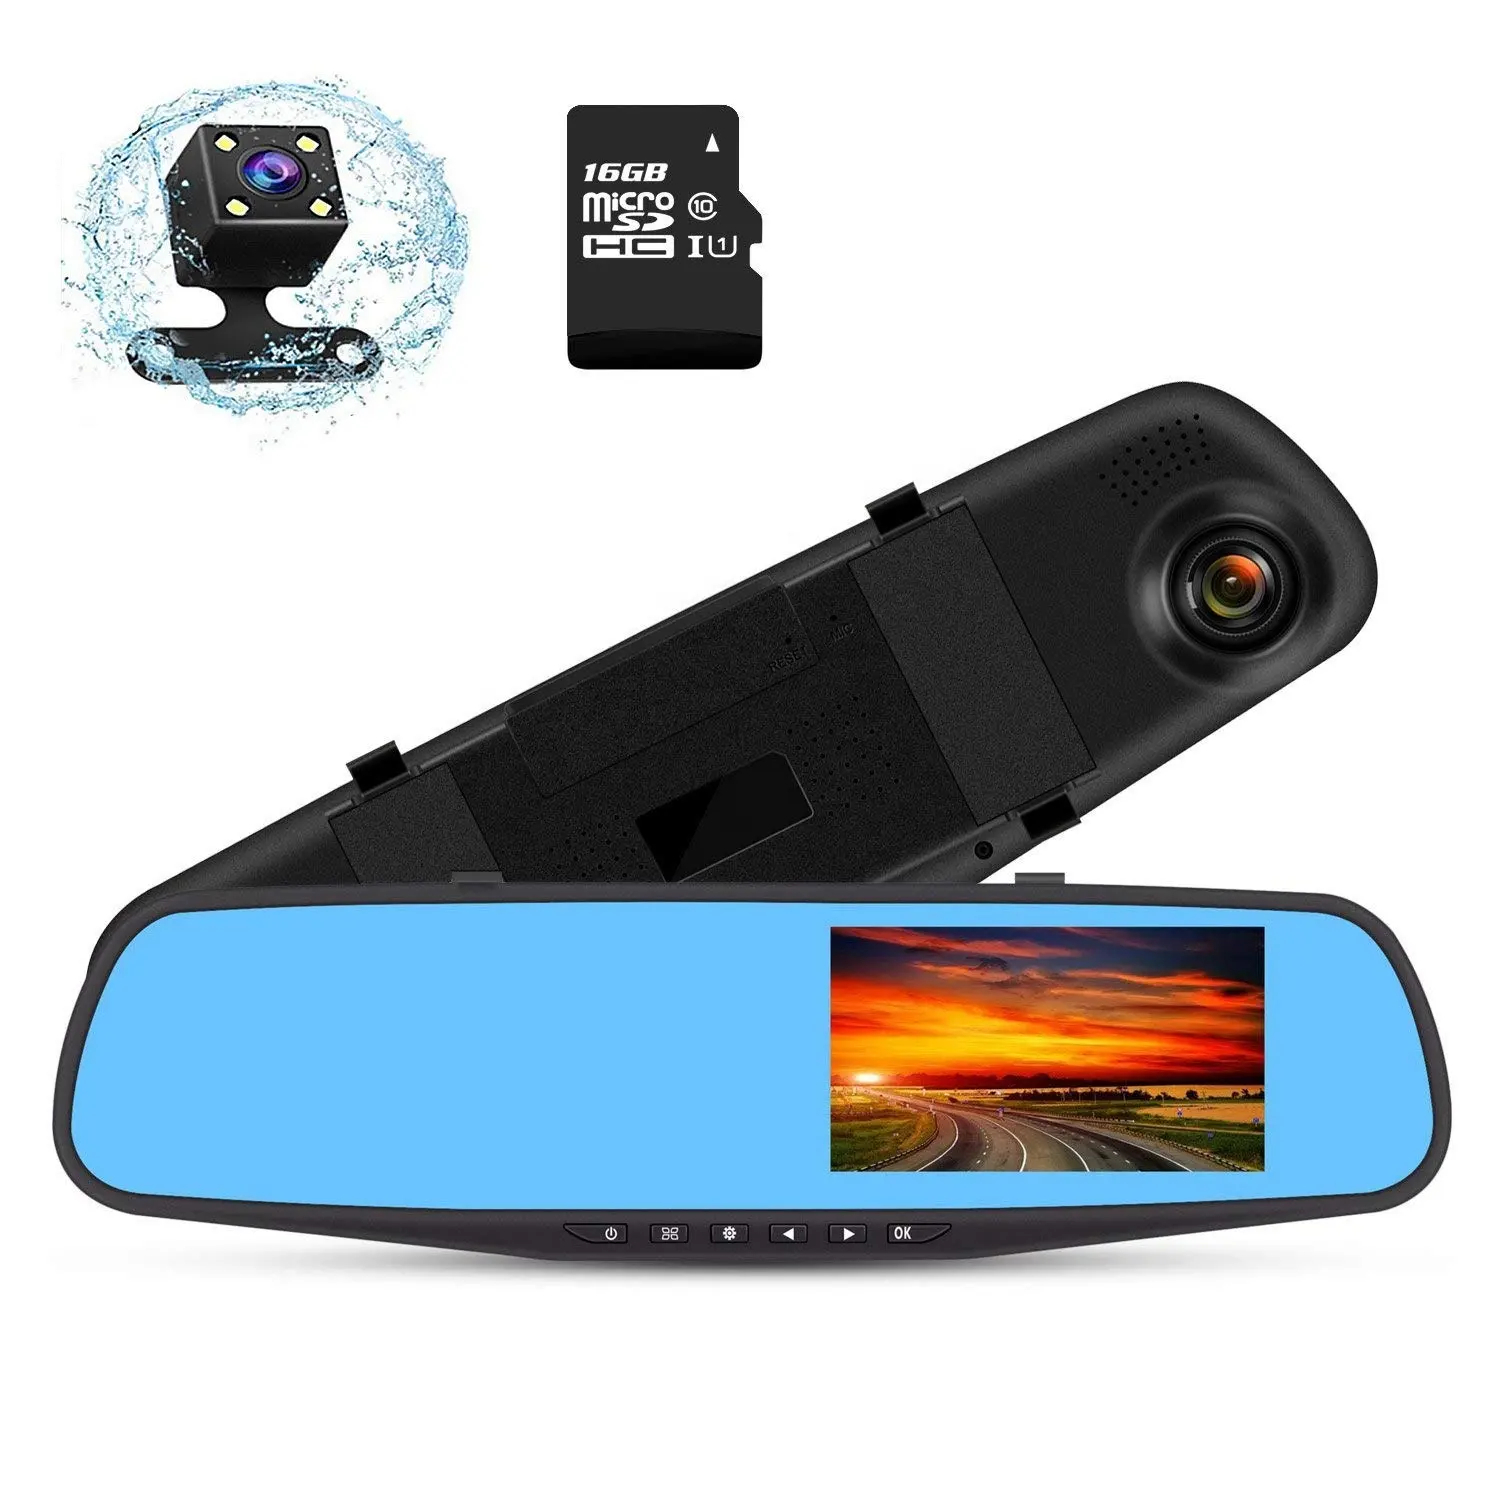 Çift Lens dikiz aynası araba dvr'ı kamera 4.3 inç sürüş kaydedici HD gece görüş 1080P 170 derece geniş açı Dashboard kamera